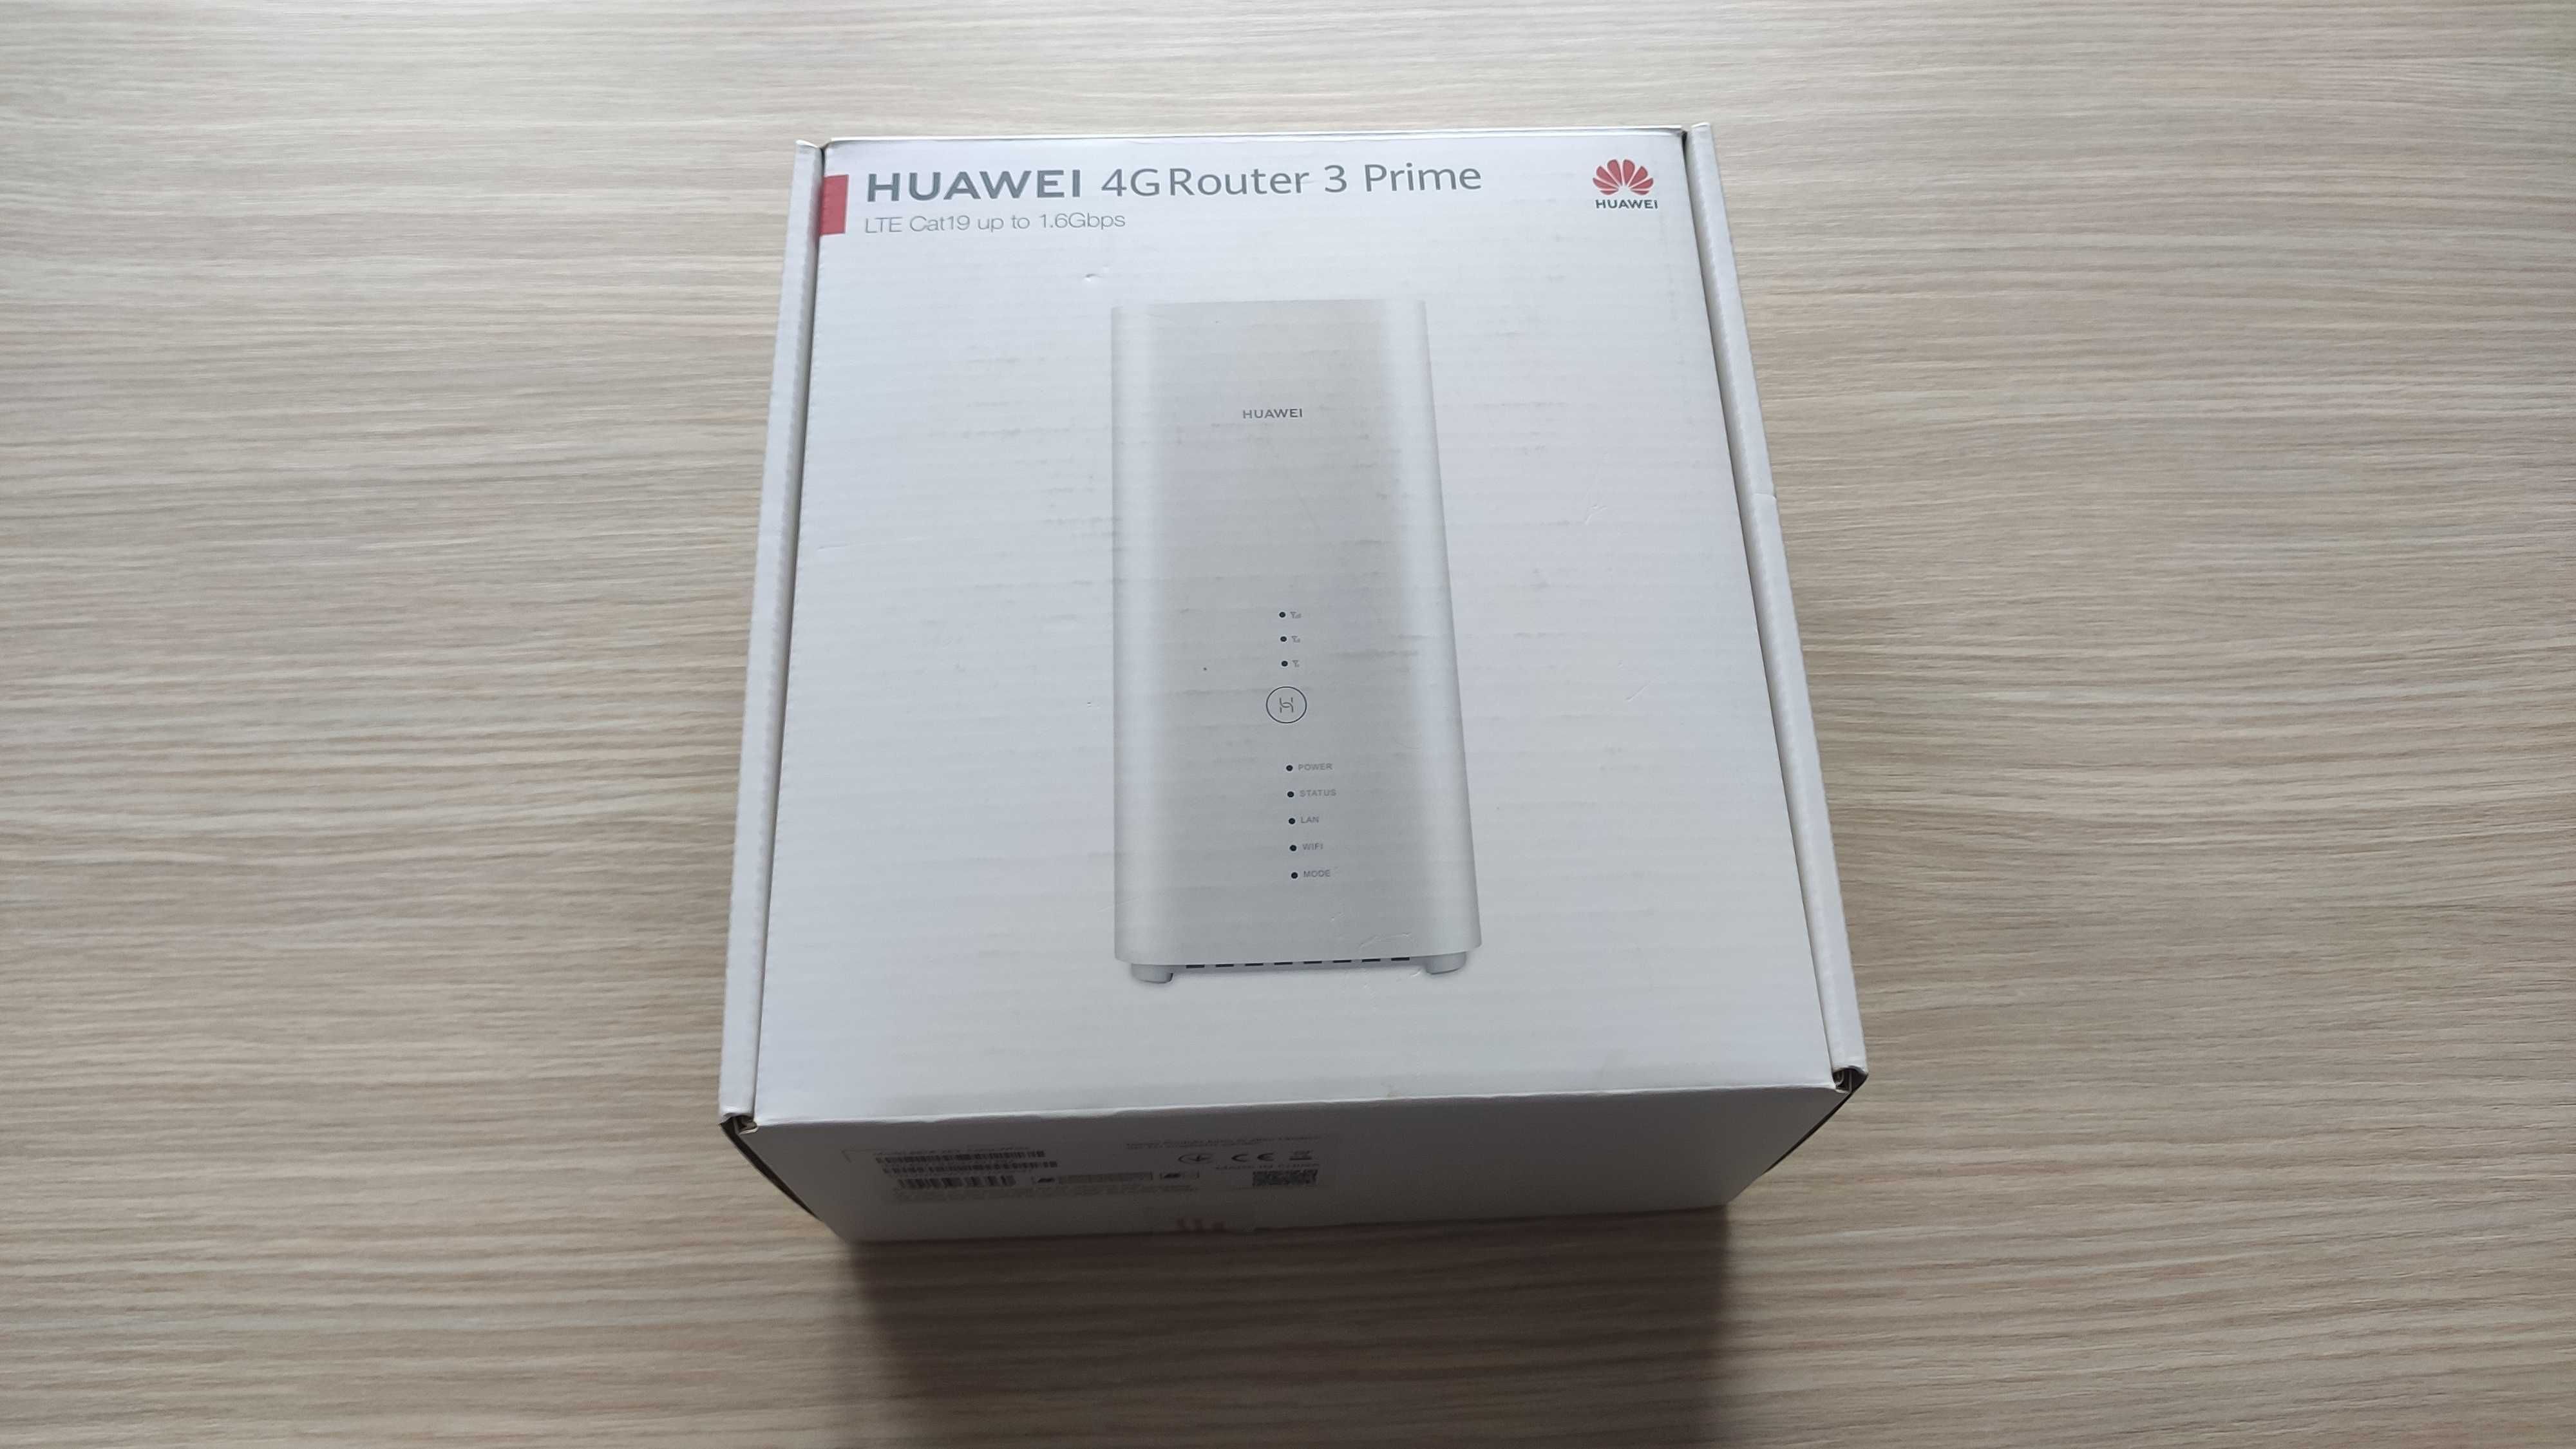 Router Huawei B818